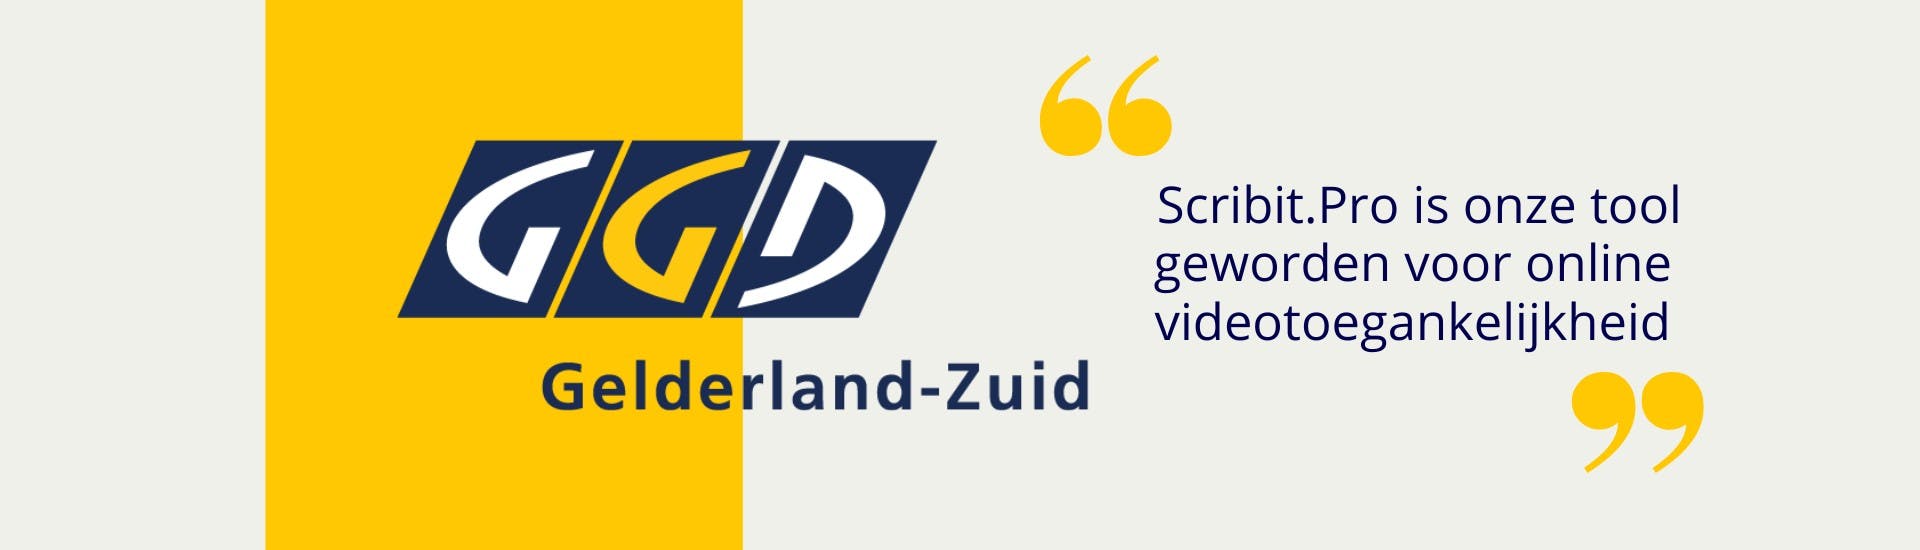 Logo GGD Gelderland-Zuid met een geel blok erachter. Rechts ernaast staat tussen gele aanhalingstekens: Scribit.Pro is onze tool geworden voor online videotoegankelijkheid.